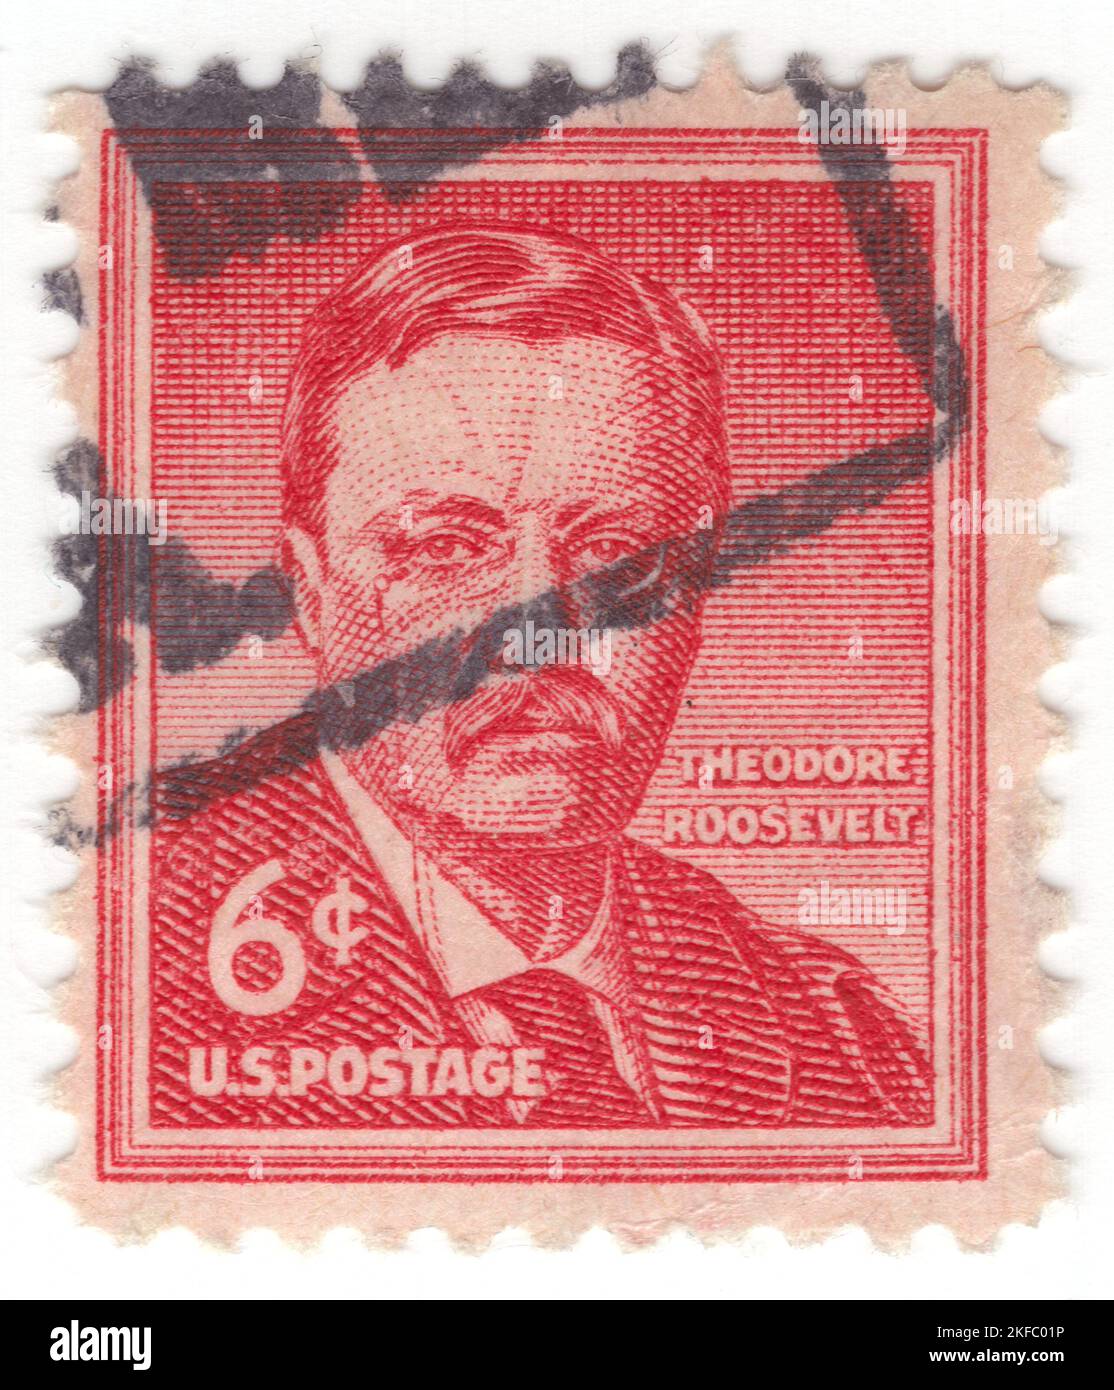 USA - 1955: Un timbre-poste de 6 cents de carmin représentant le portrait de Theodore Roosevelt Jr., souvent appelé Teddy ou par ses initiales, T. R., était un homme politique américain, homme d'État, soldat, conservateur, naturaliste, Historien et écrivain qui a été président des États-Unis en 26th de 1901 à 1909. Auparavant, il a été vice-président de 25th sous la présidence de William McKinley de mars à septembre 1901 et gouverneur de New York de 33rd de 1899 à 1900. En assumant la présidence après l'assassinat de McKinley, Roosevelt est apparu comme un chef du Parti républicain Banque D'Images